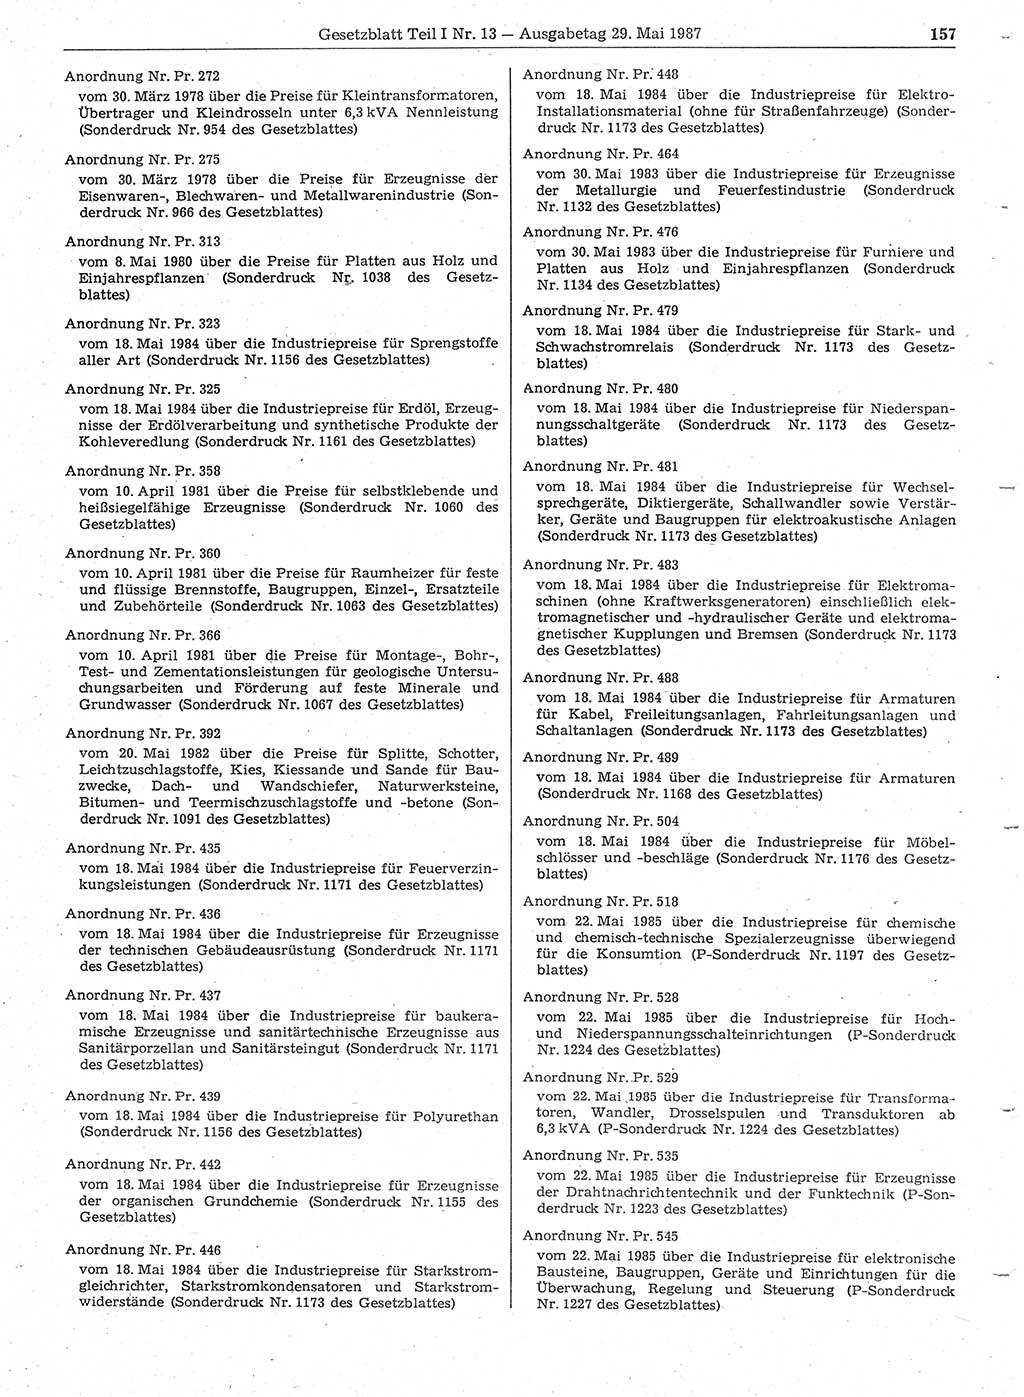 Gesetzblatt (GBl.) der Deutschen Demokratischen Republik (DDR) Teil Ⅰ 1987, Seite 157 (GBl. DDR Ⅰ 1987, S. 157)